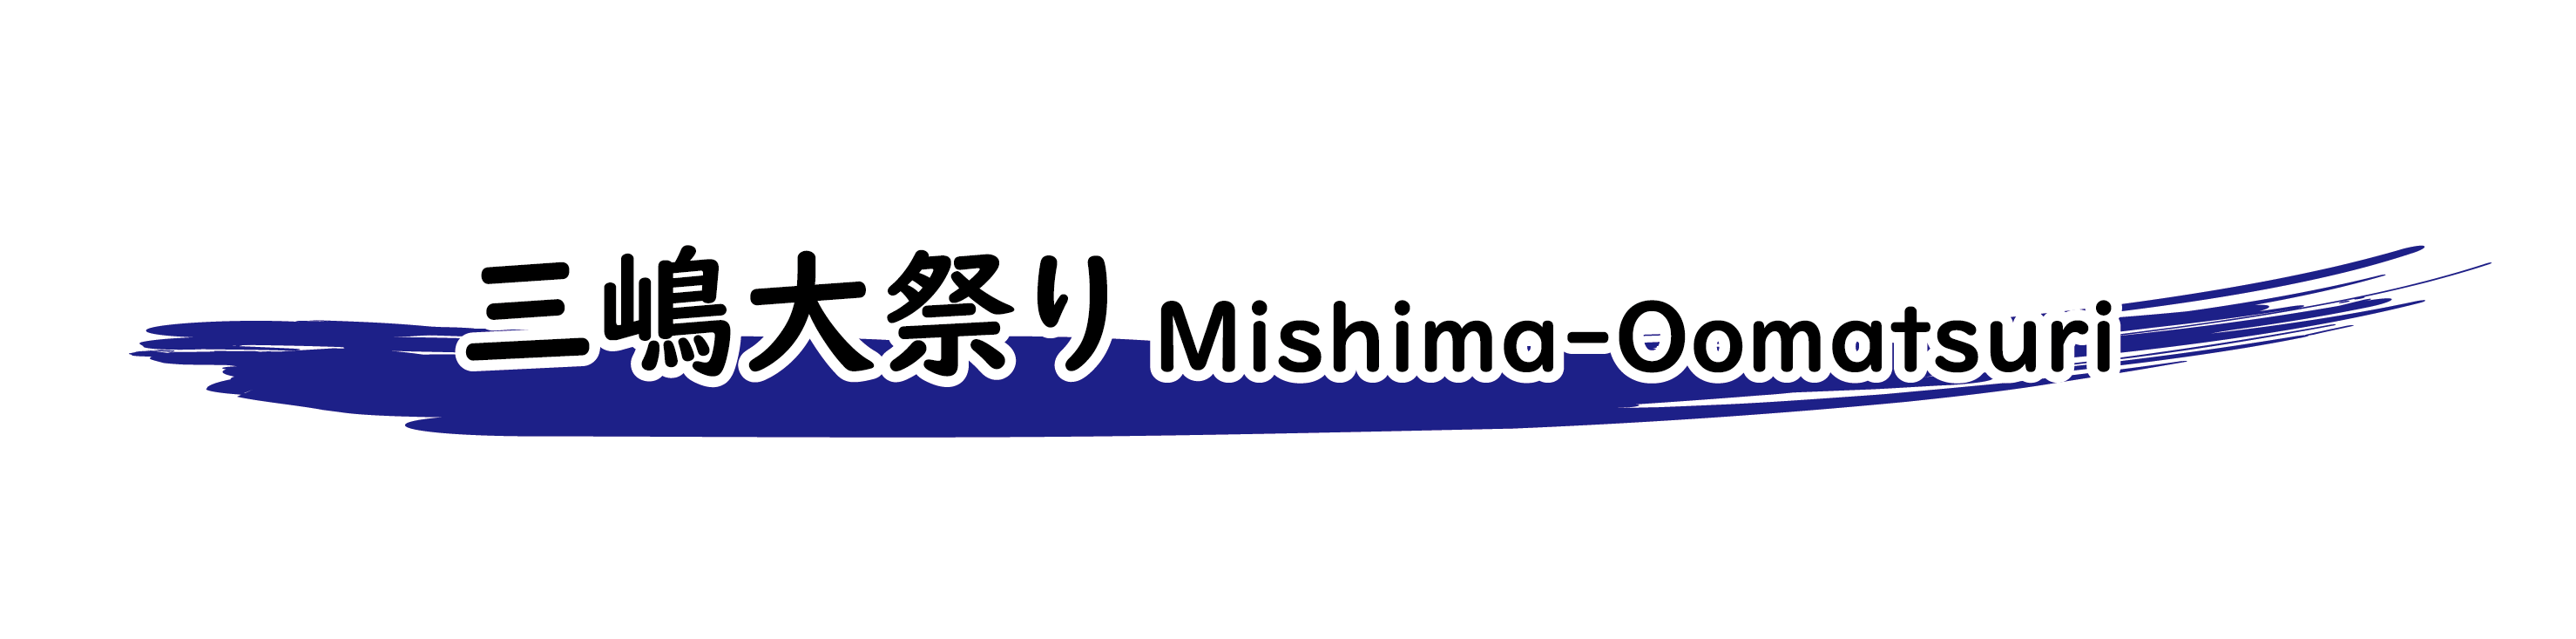 三嶋大祭り Mishima-Oomatsuri